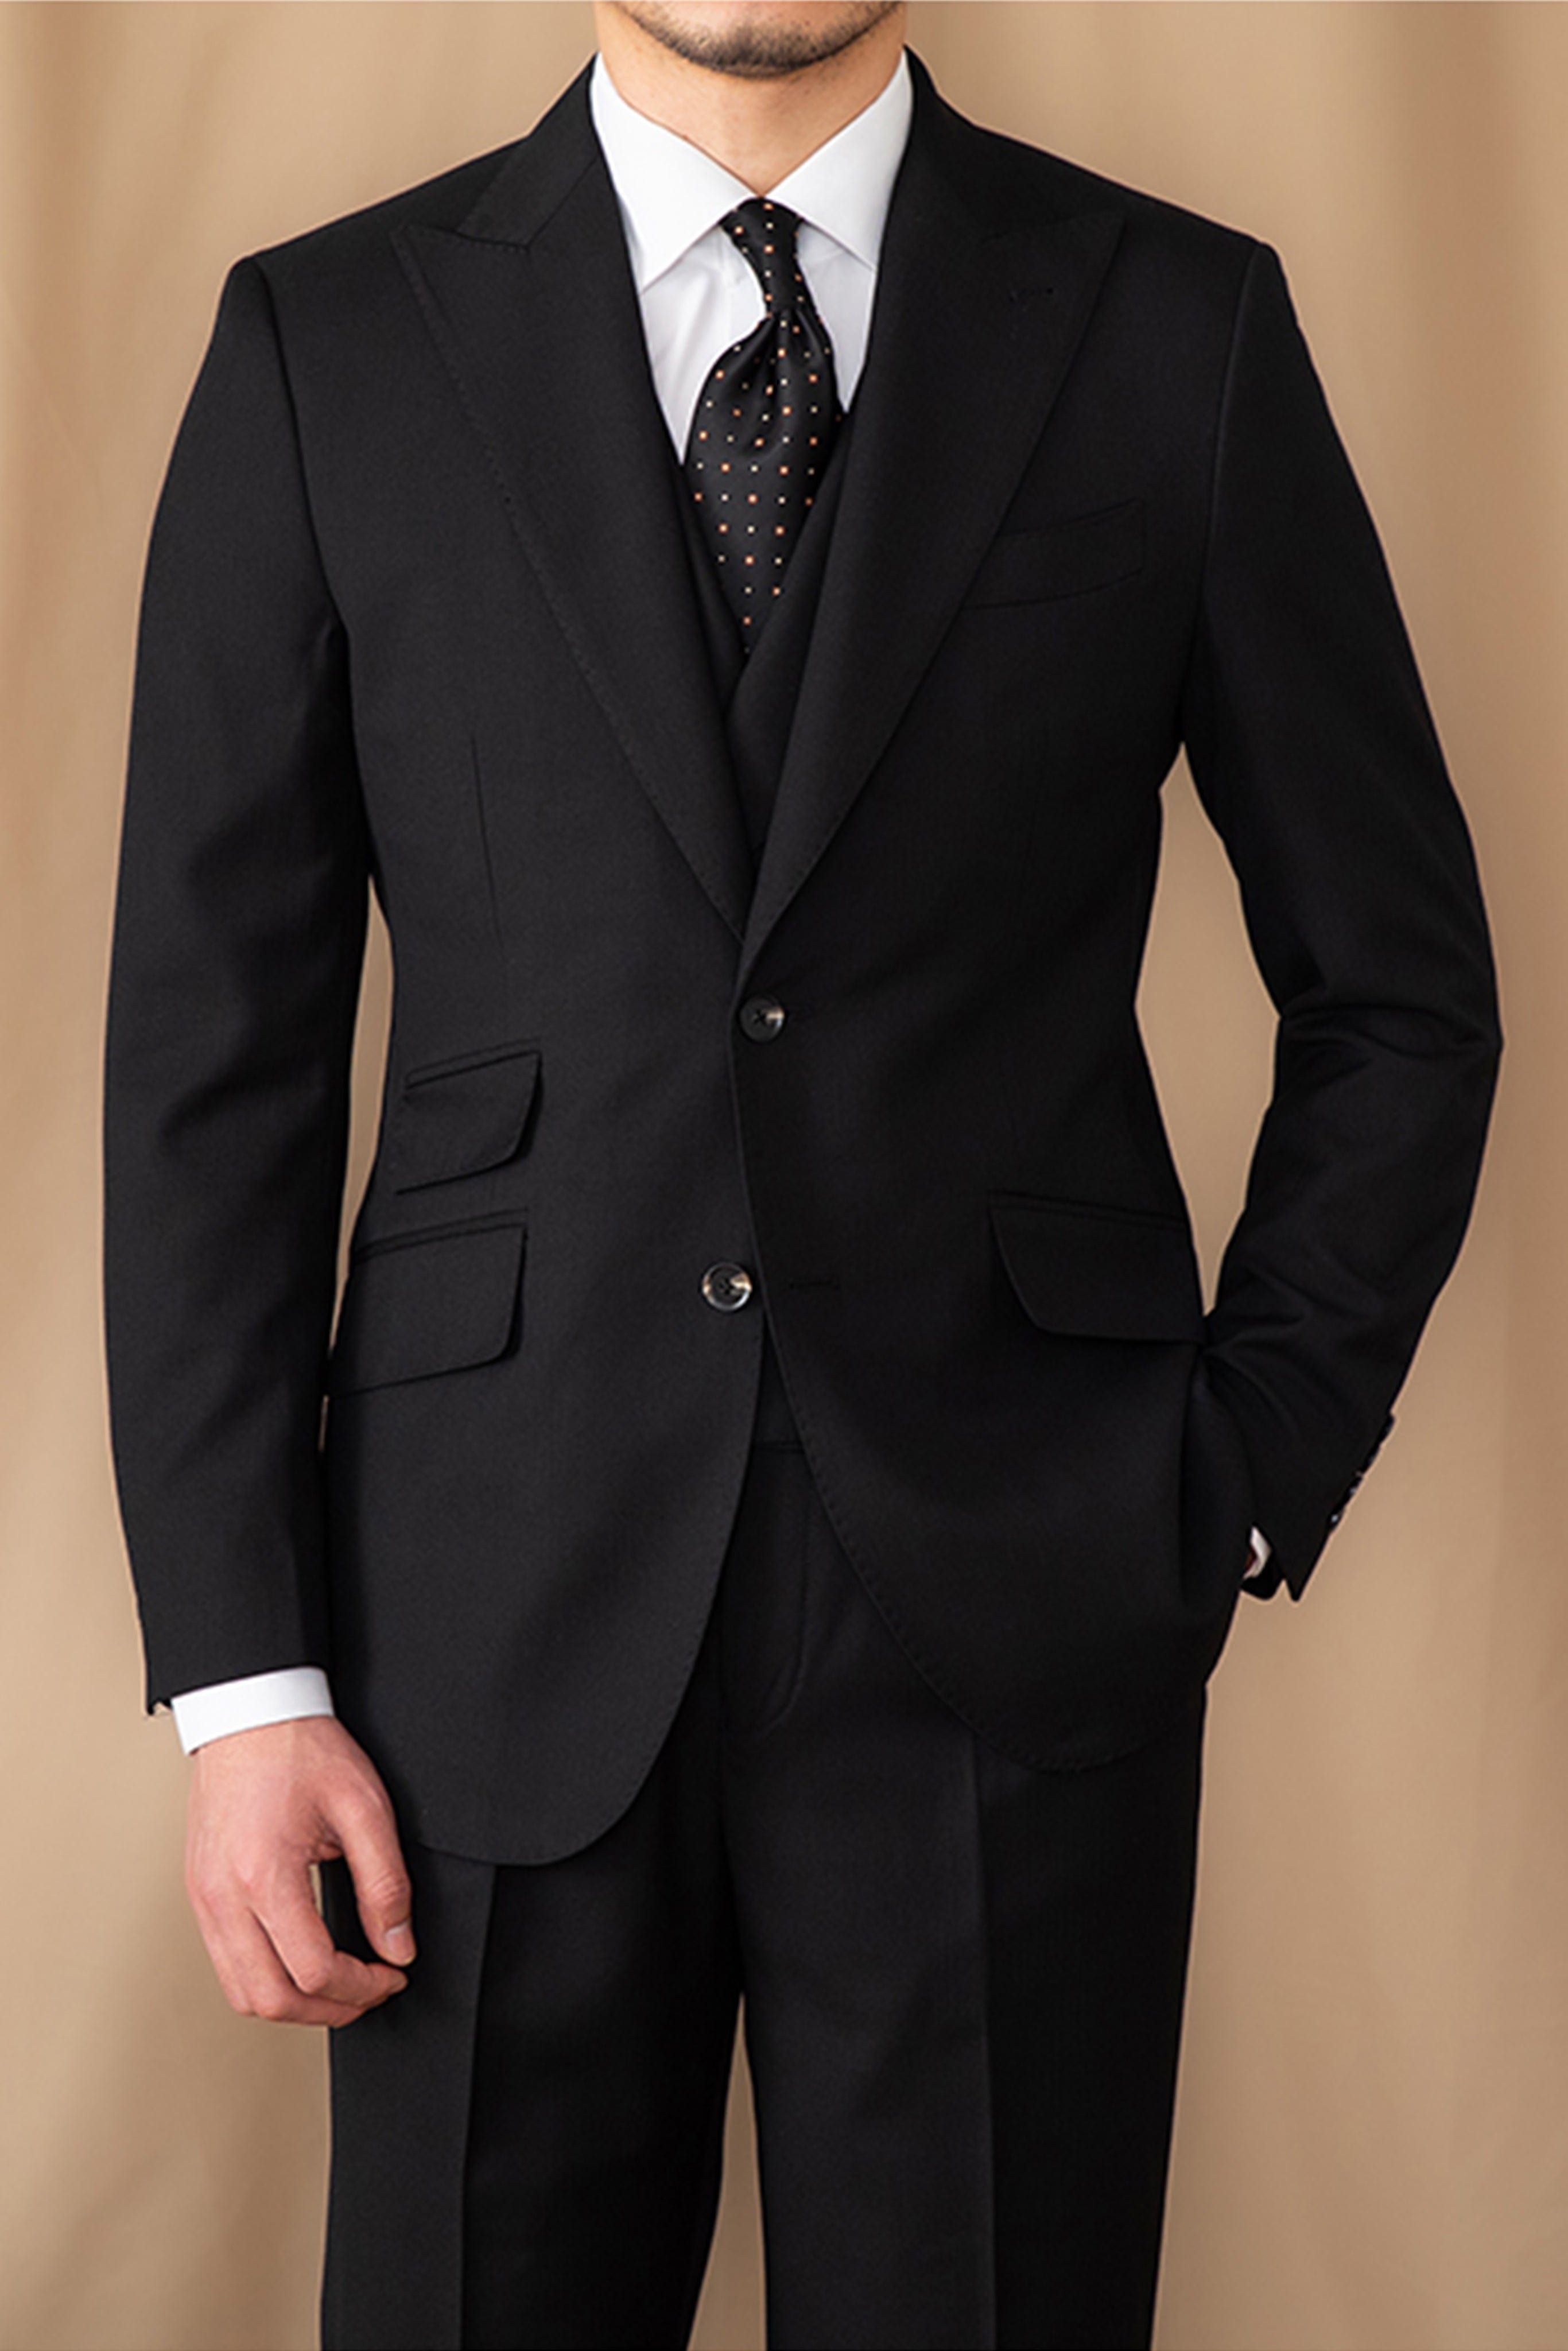 aesido 3 Piece Black Business Casual Peak Lapel Double Vented Men's Suit (Blazer+Vest+Pants)